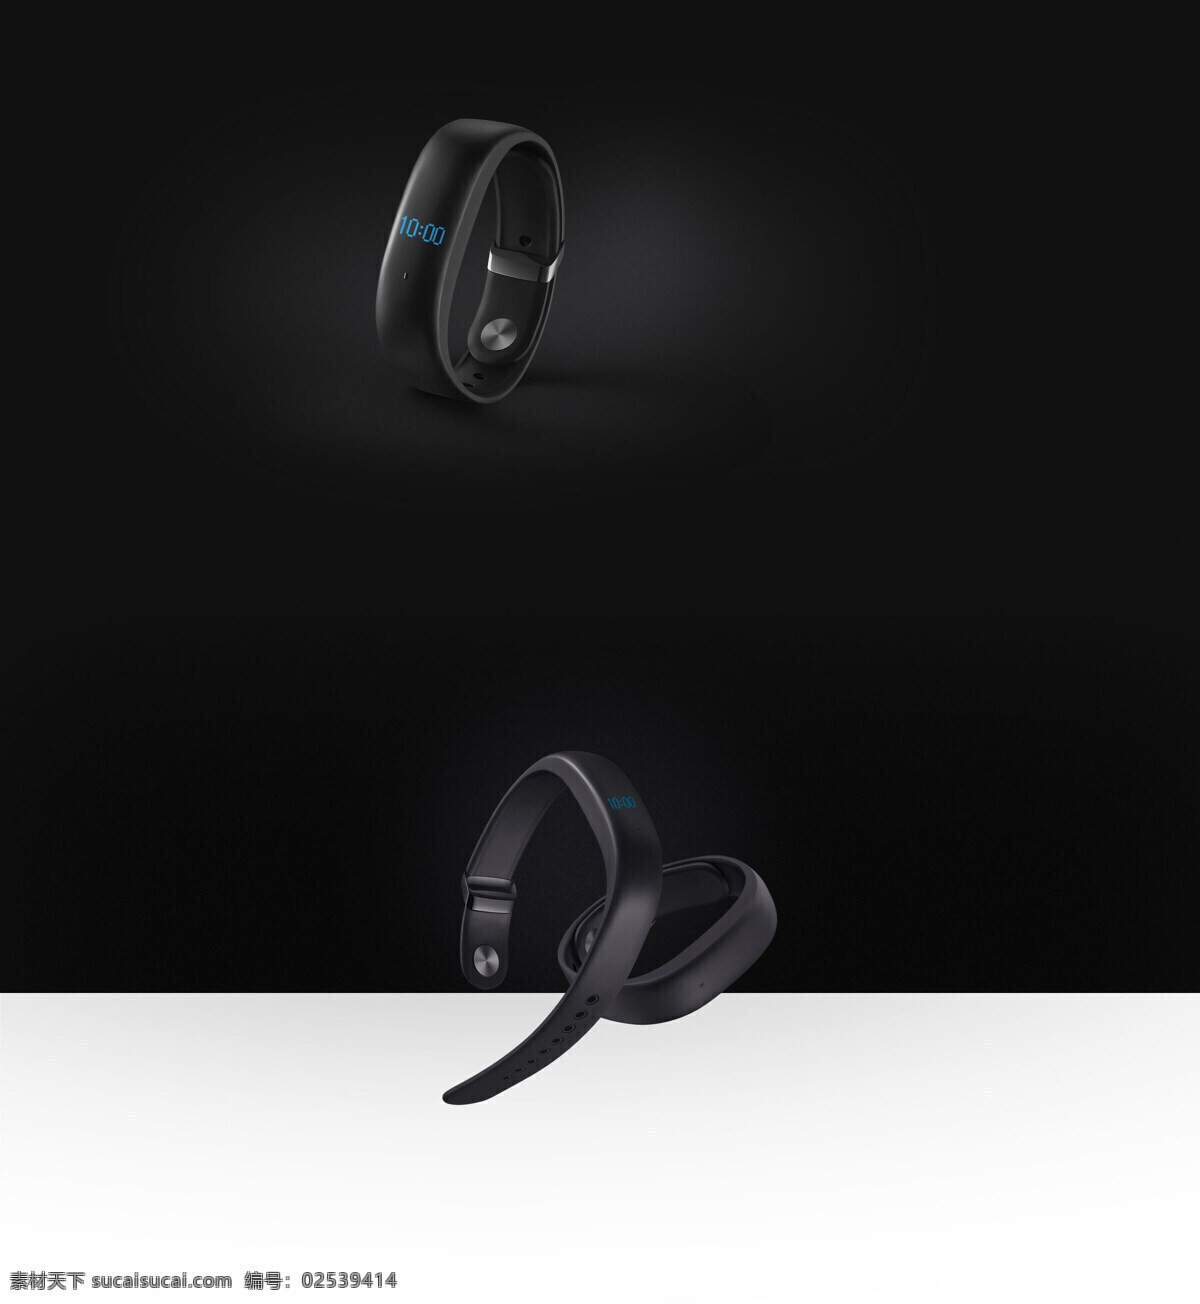 黑色 创意 智能 电子手表 防水 概念 户外 计步 手环 运动手表